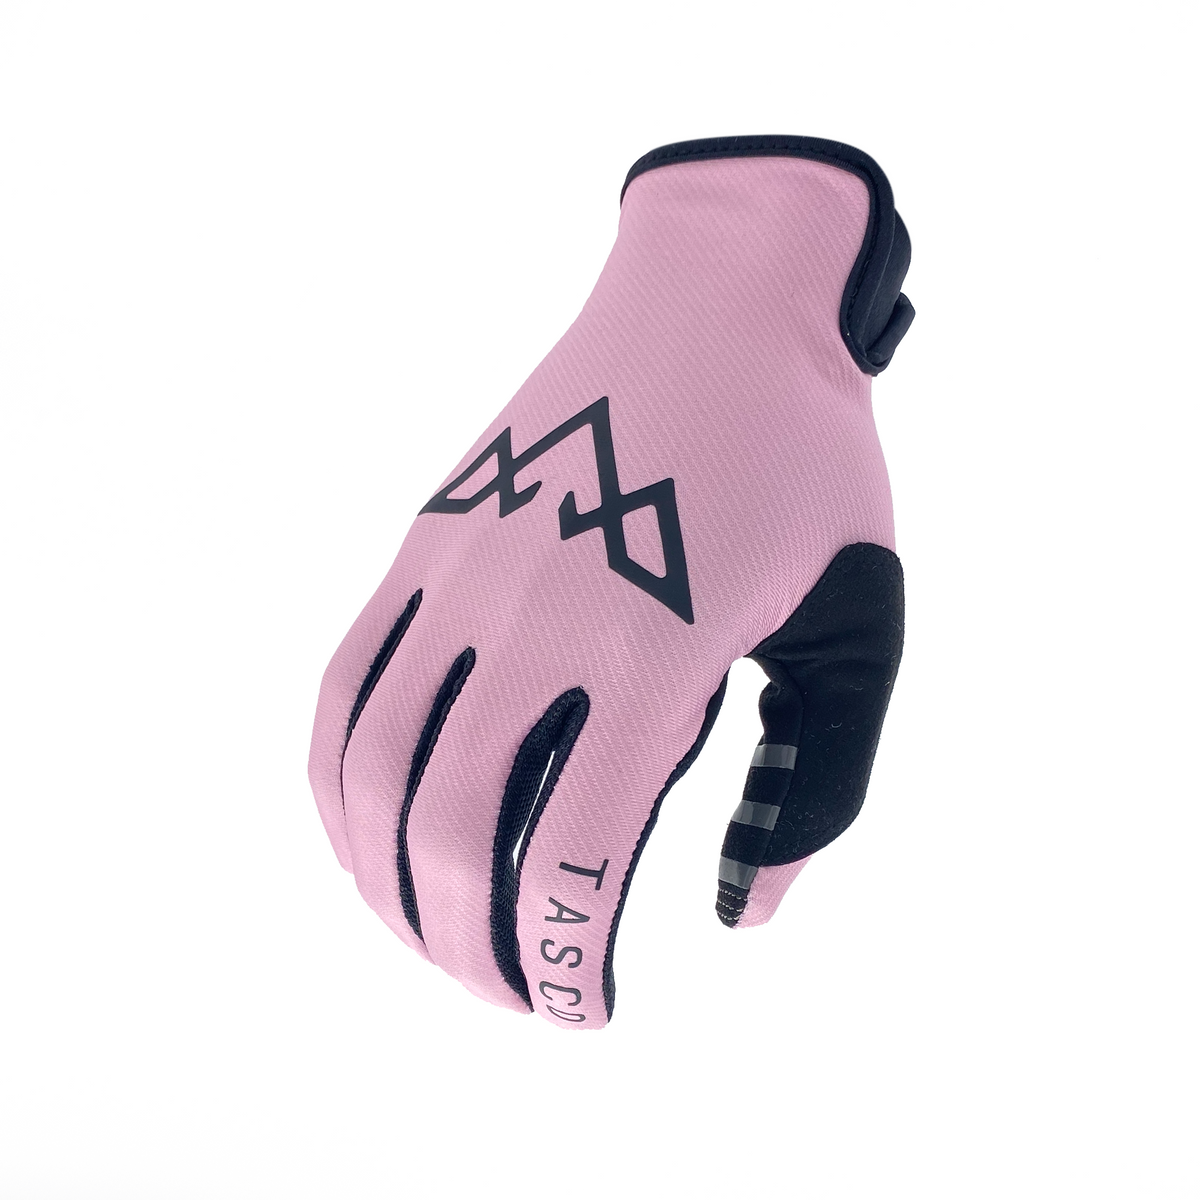 Ridgeline Gloves - Chalk Pink